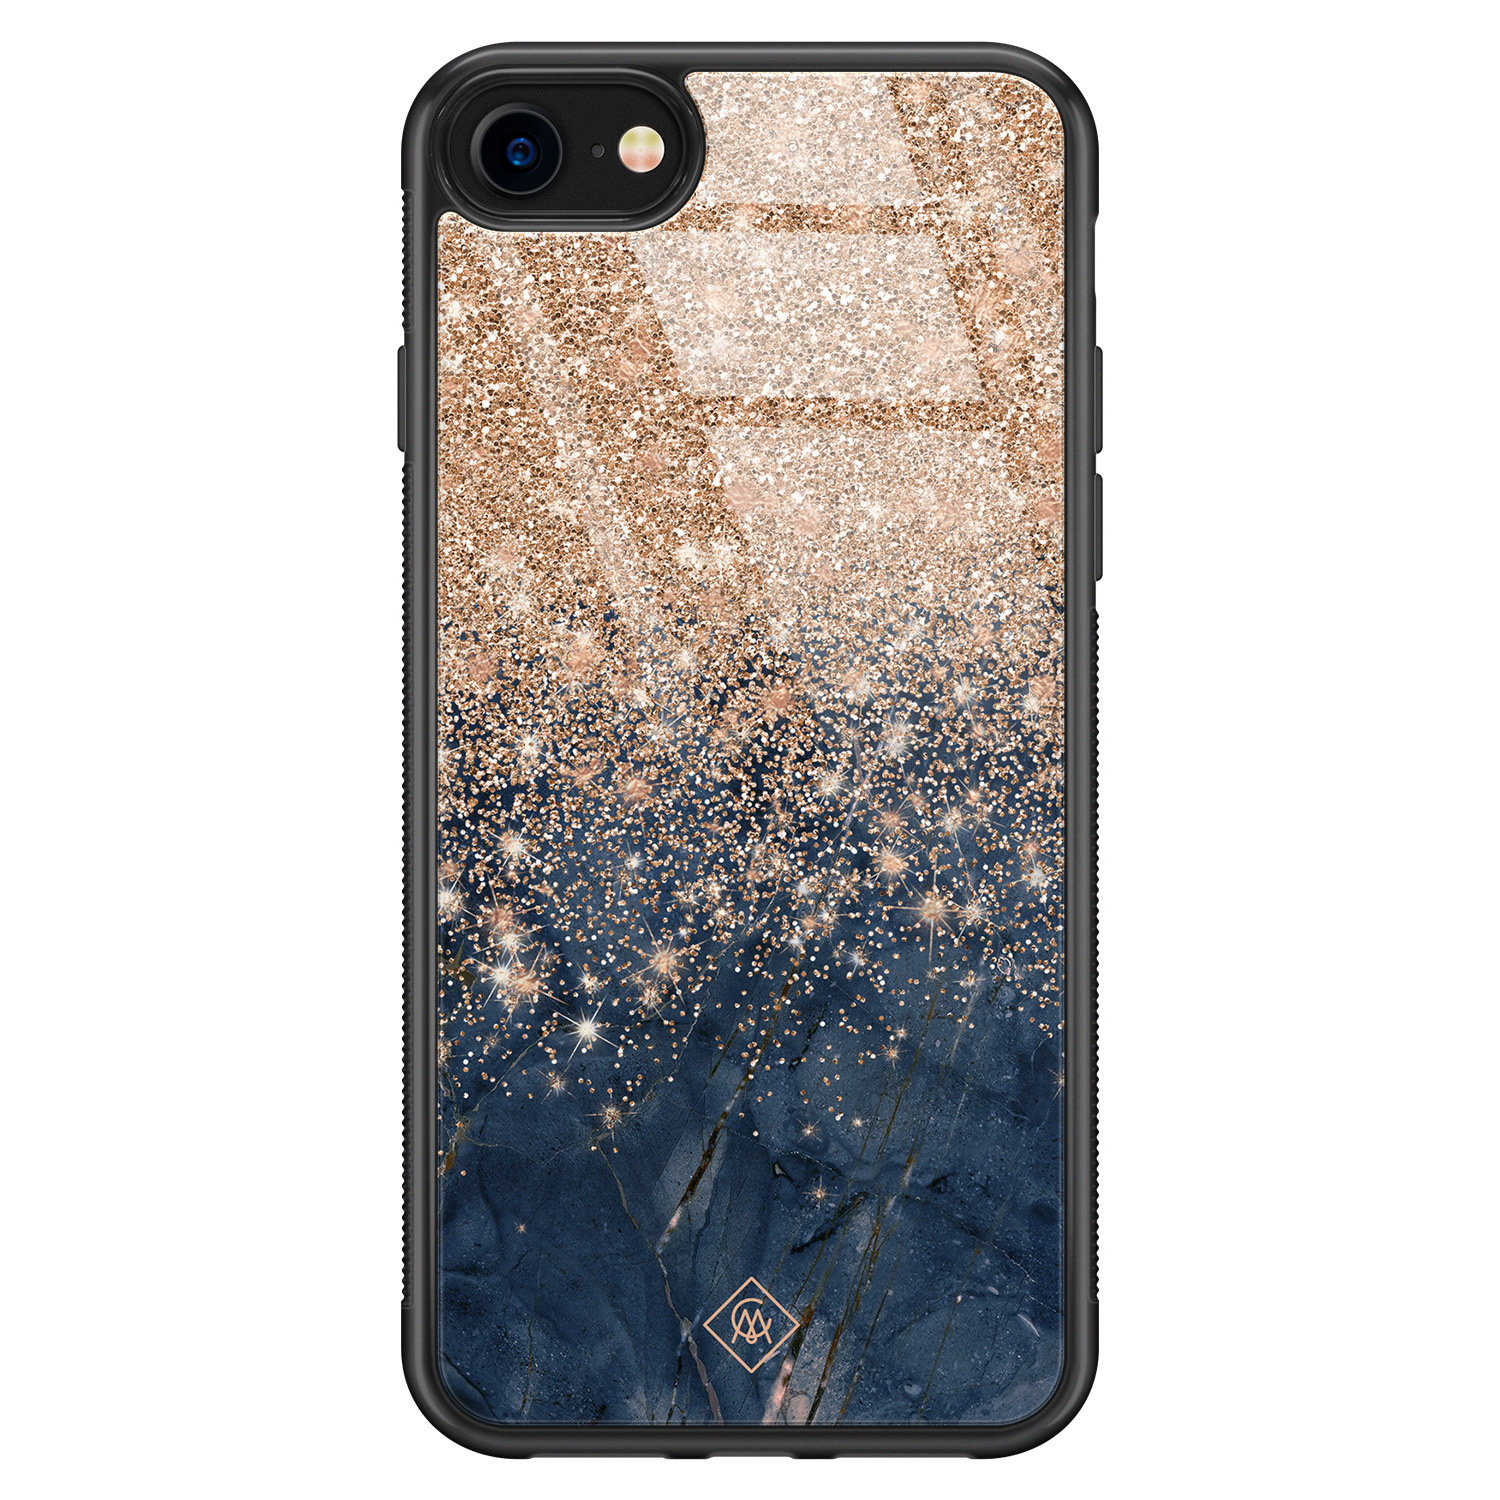 voorkomen Pijlpunt Boek Hoesje iPhone 8/7 met glazen achterkant - Marmer blauw rosegoud -  Casimoda.nl